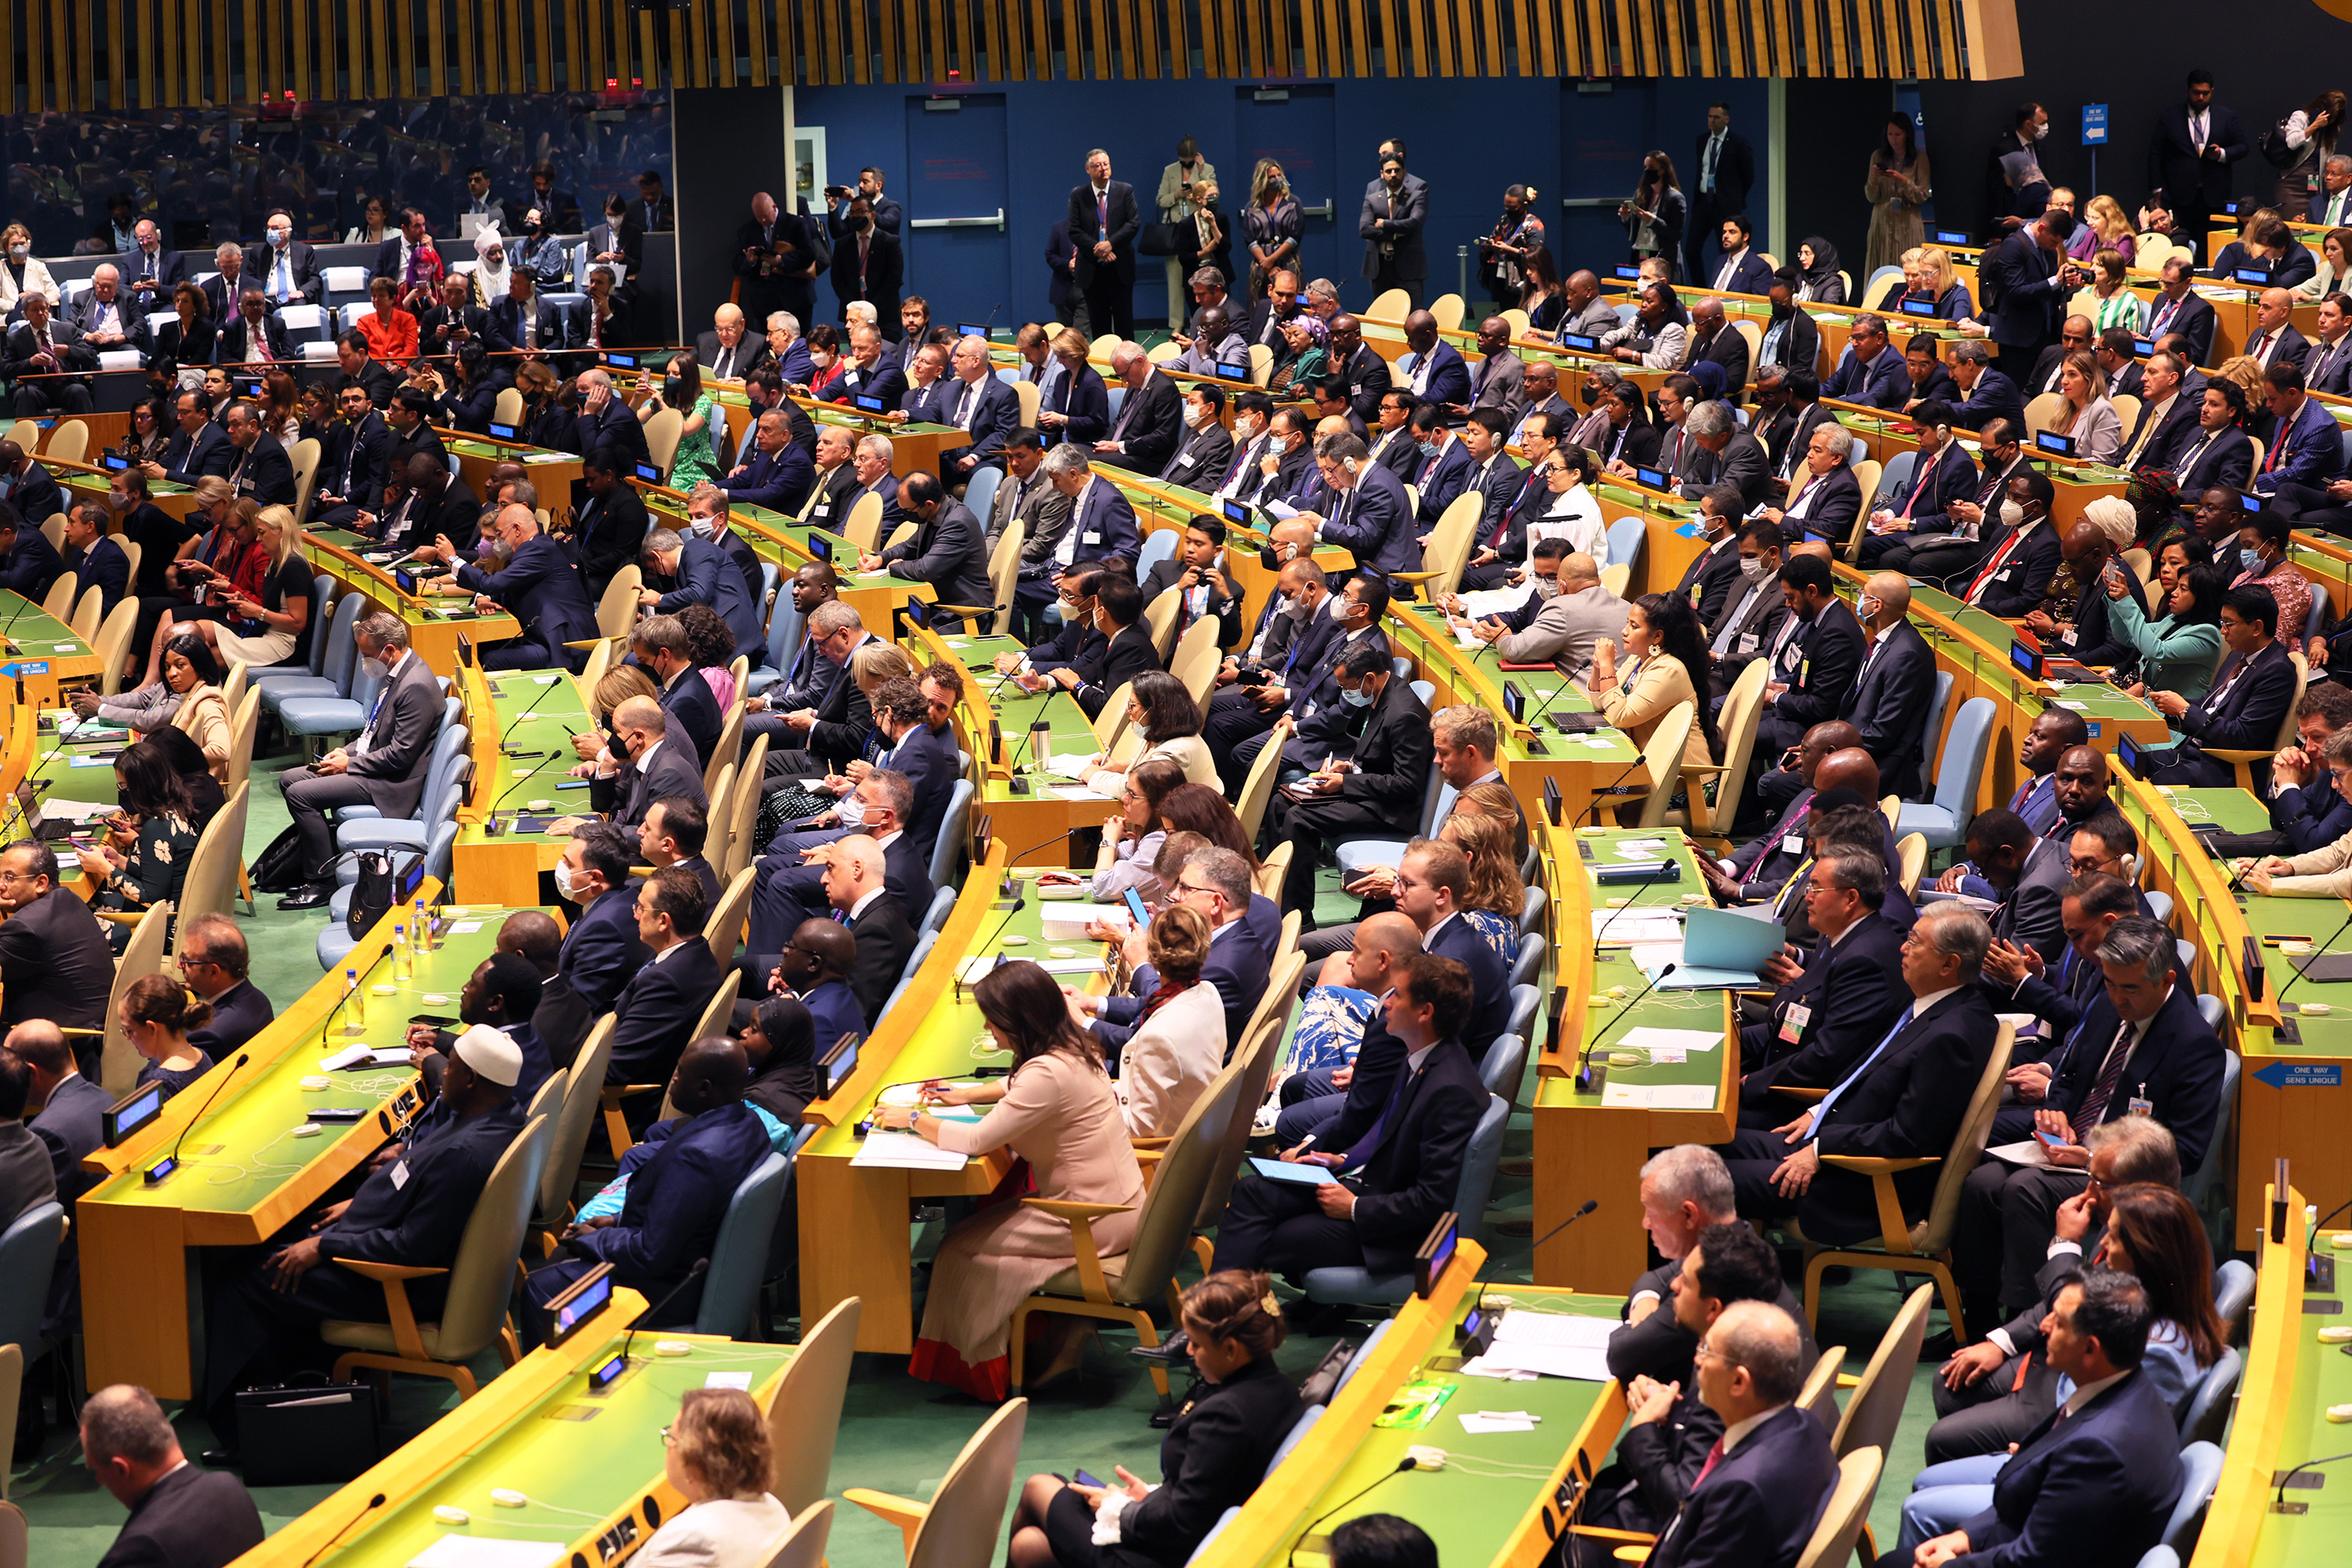 联合国秘书长安东尼奥·古特雷斯于 9 月 20 日在纽约市联合国总部举行的第 77 届联合国大会 (UNGA) 上发表讲话，大会成员聆听。 